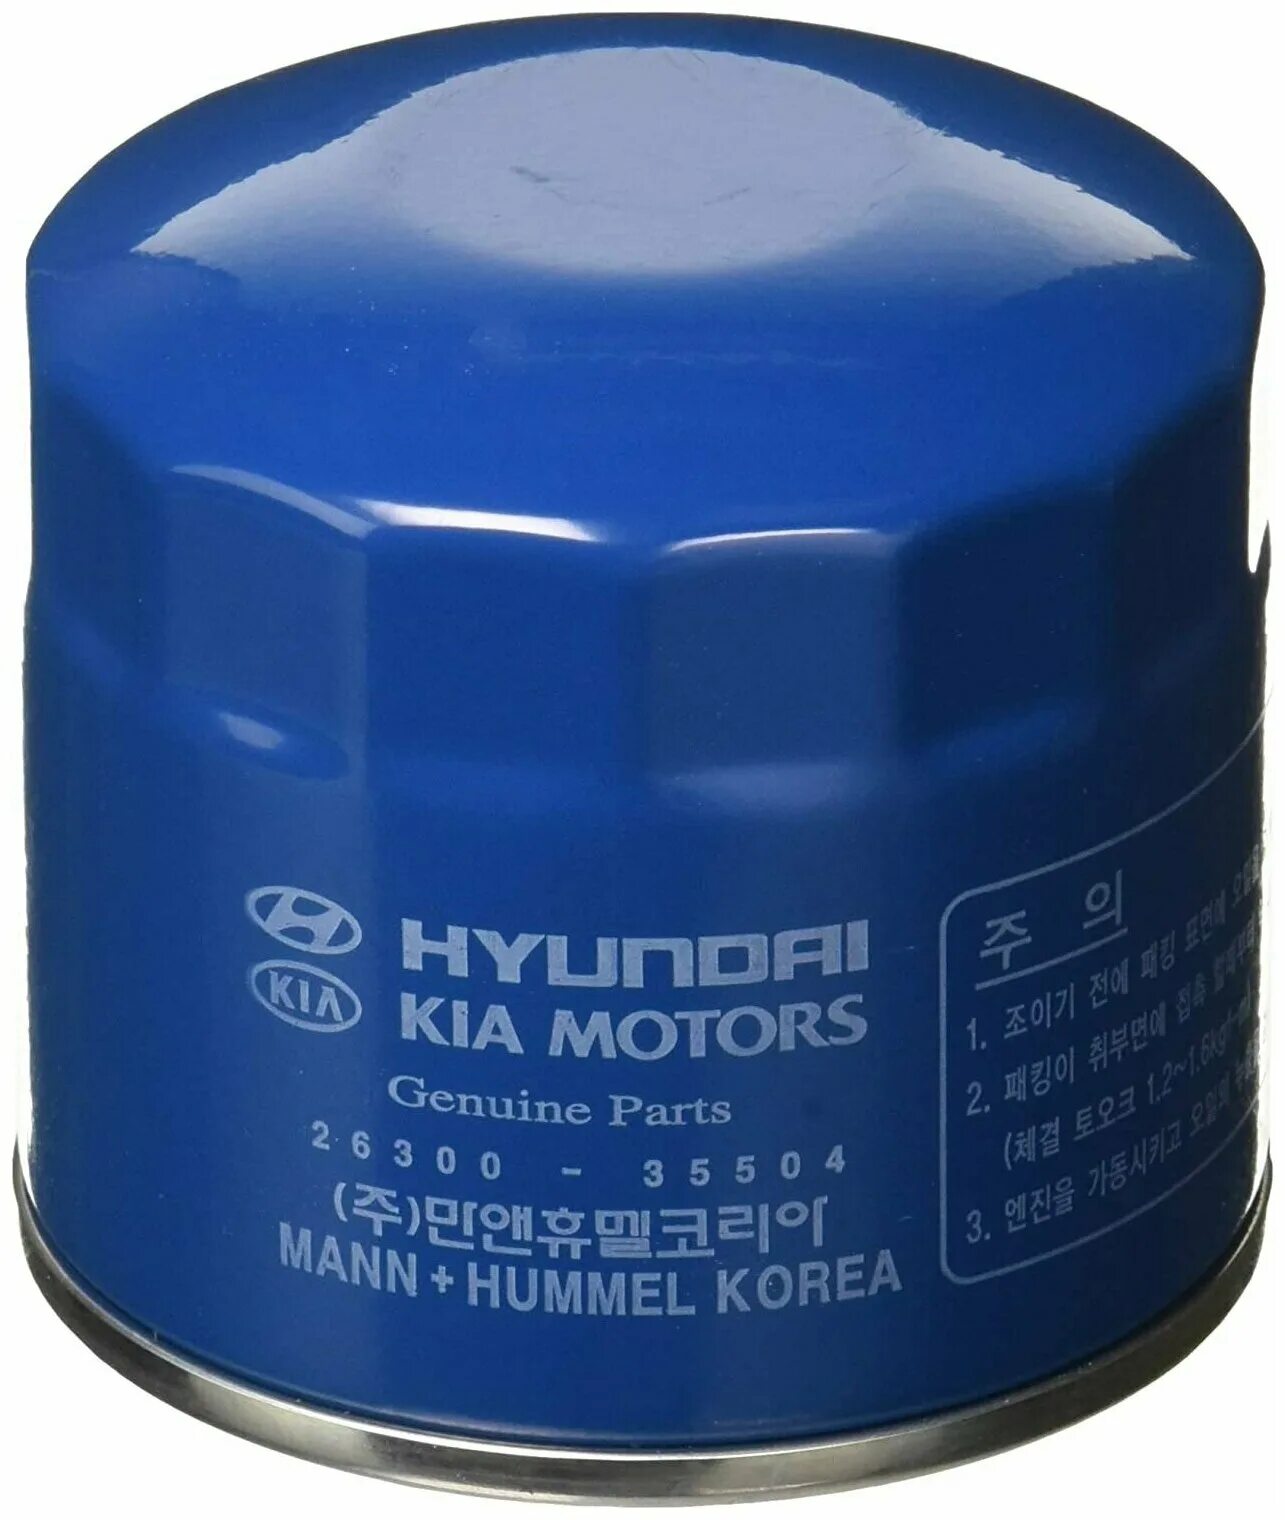 Купить фильтр хендай солярис. Масляный фильтр Hyundai 26300-35505. Hyundai/Kia 26300-35504 фильтр масляный. 2630035505 Фильтр масляный. Фильтр 26300-35504.